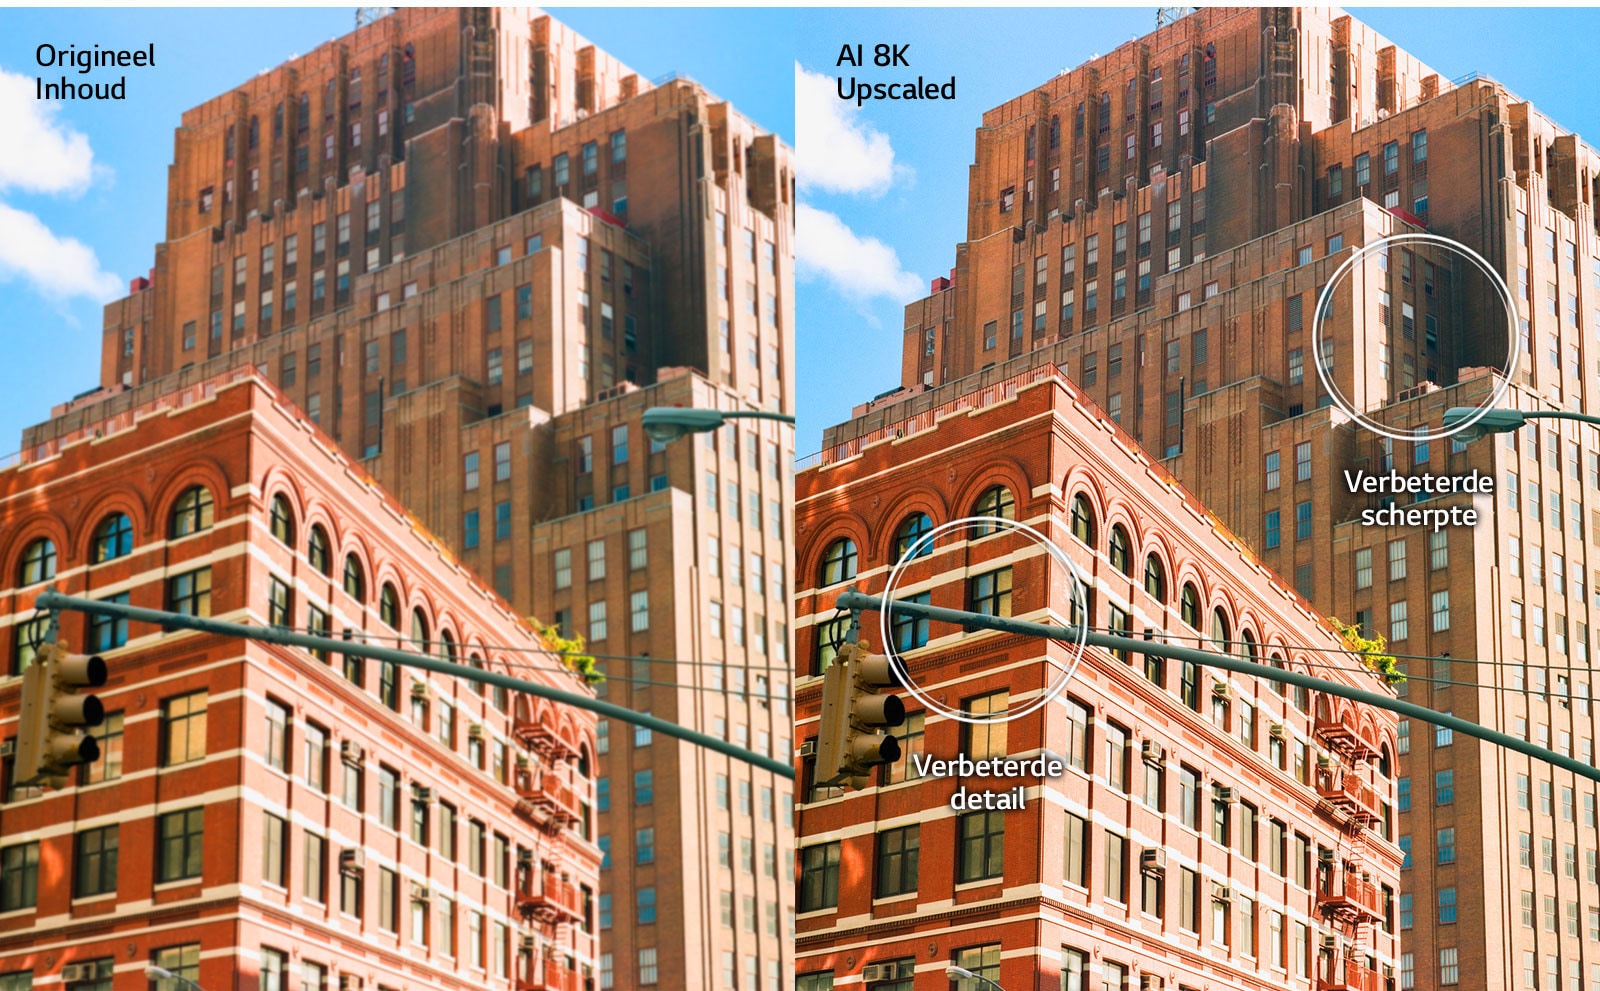 Zij-aan-zij beeld van rode stadsgebouwen. Het beeld rechts is scherper en helderder, en laat zien hoe het beeld zou worden verbeterd met AI 8K-upscaling.